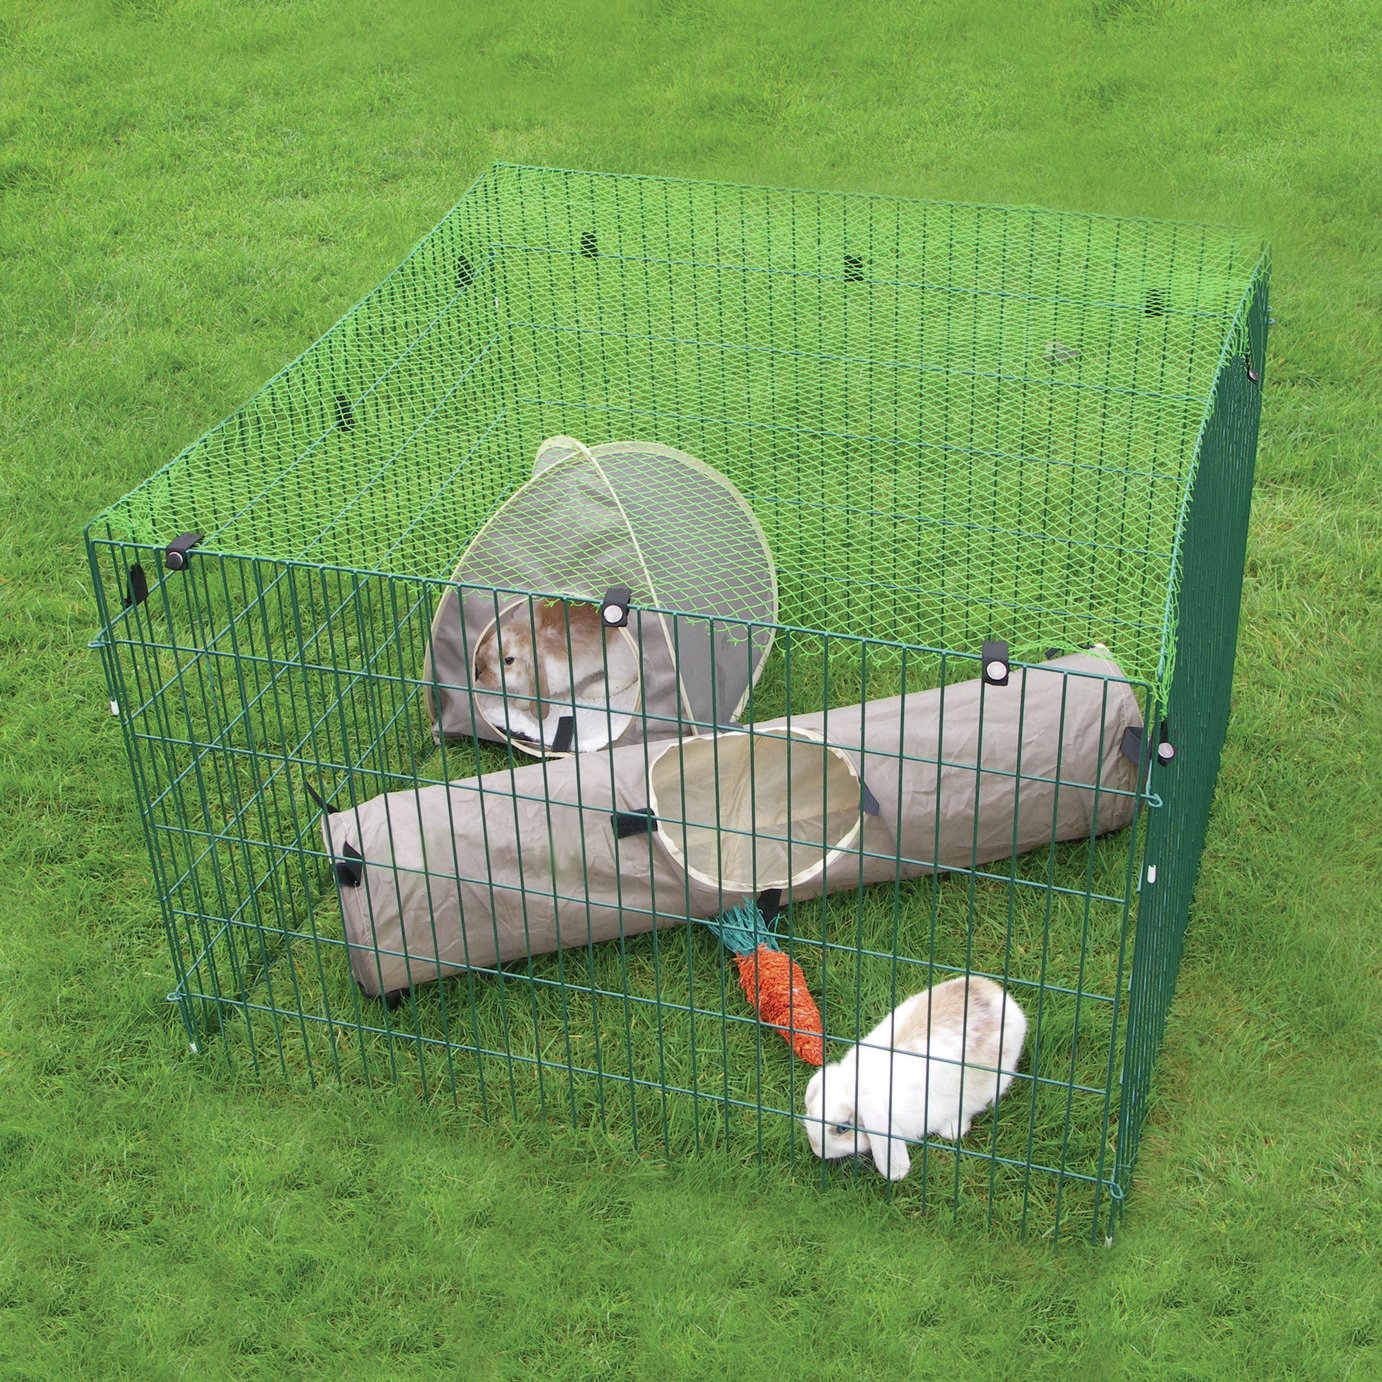 imac fantasy hamster cage argos